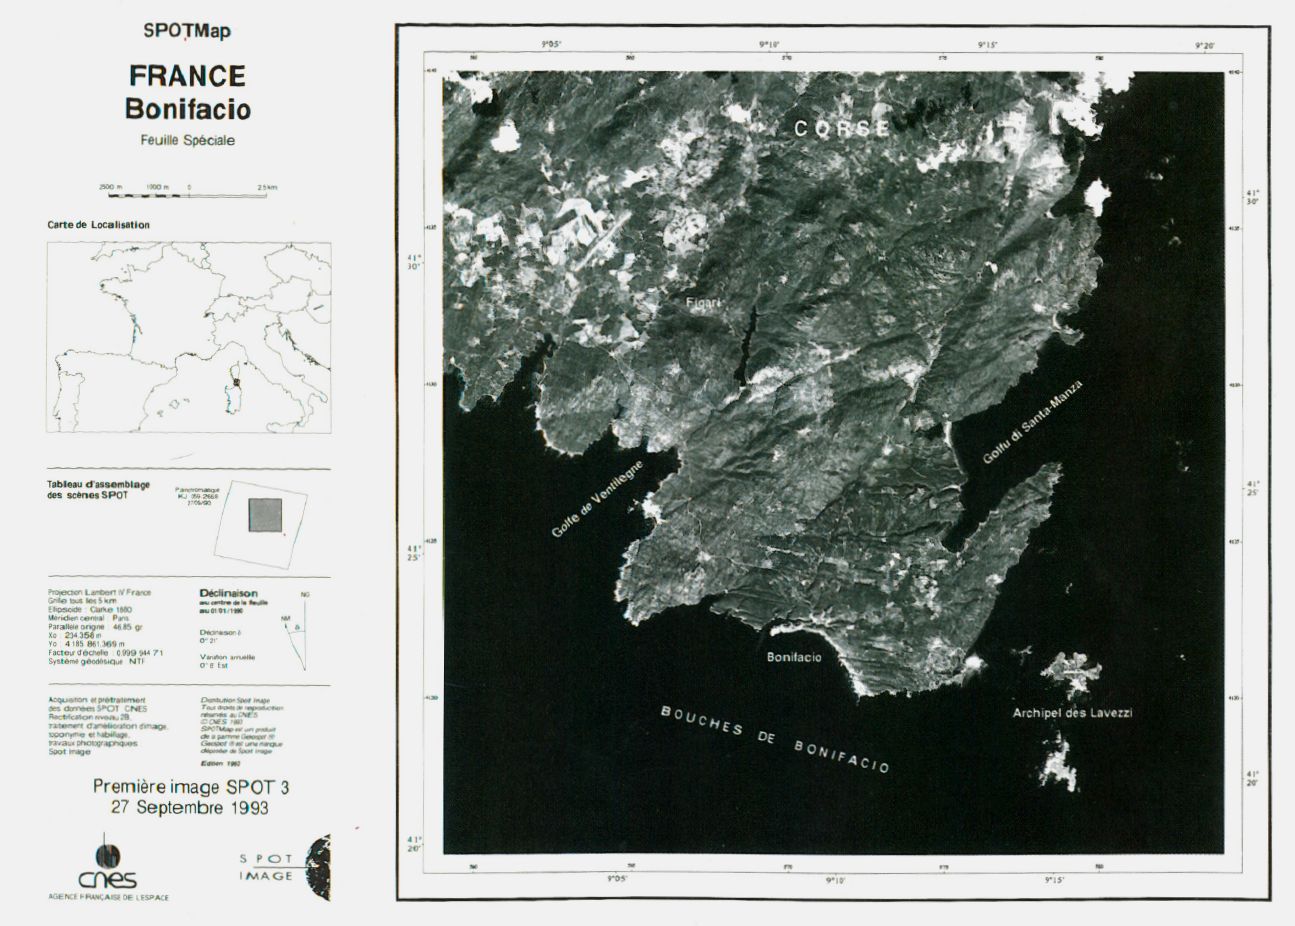 Lancement SPOT-3 - Première image SPOT-3 - Corse - Bonifacio - Iles Lavezzi - 27 septembre 1993